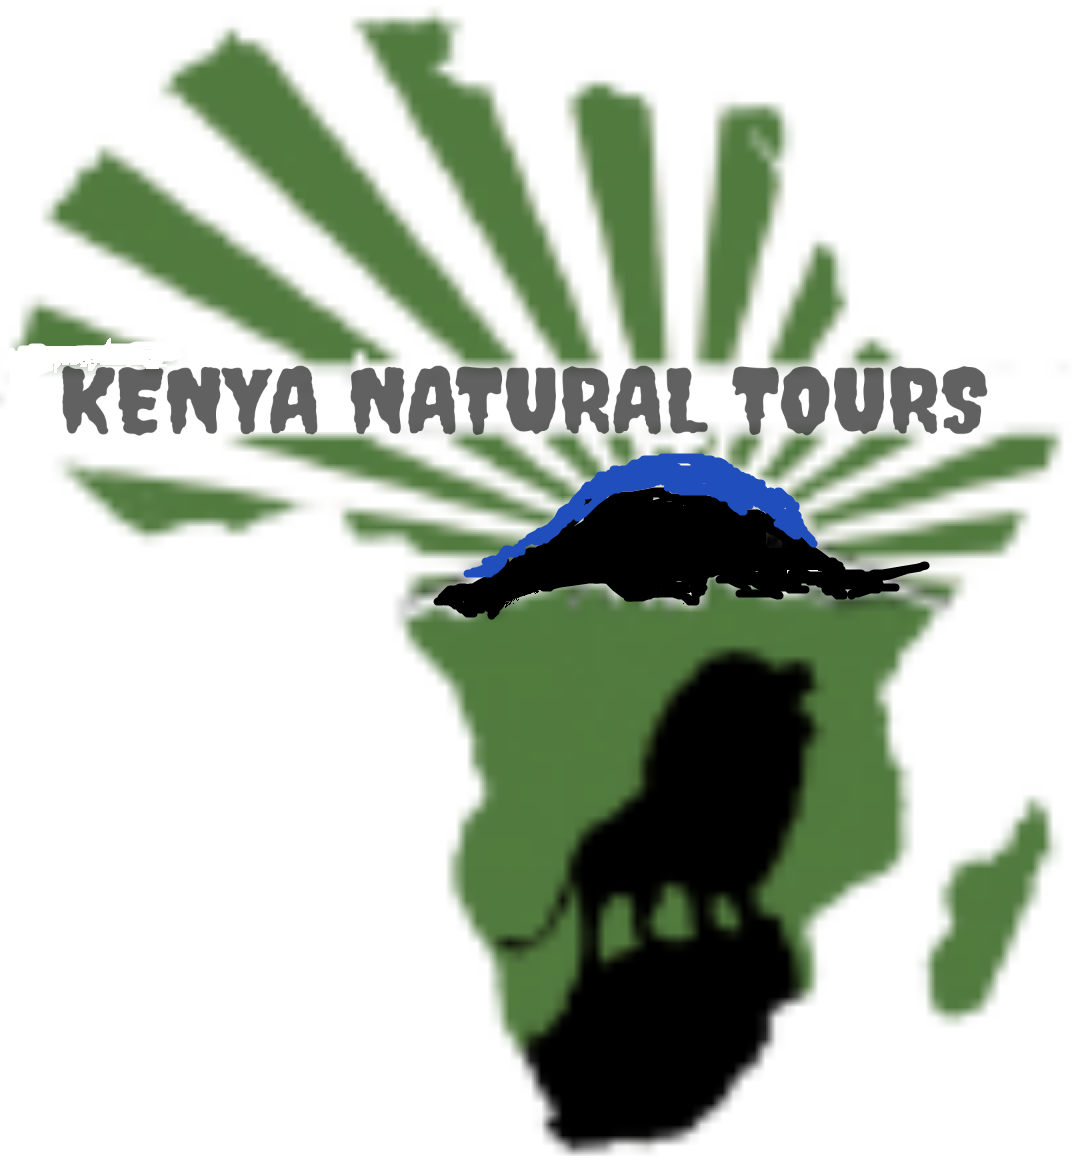 Kenya Natural Tours logo